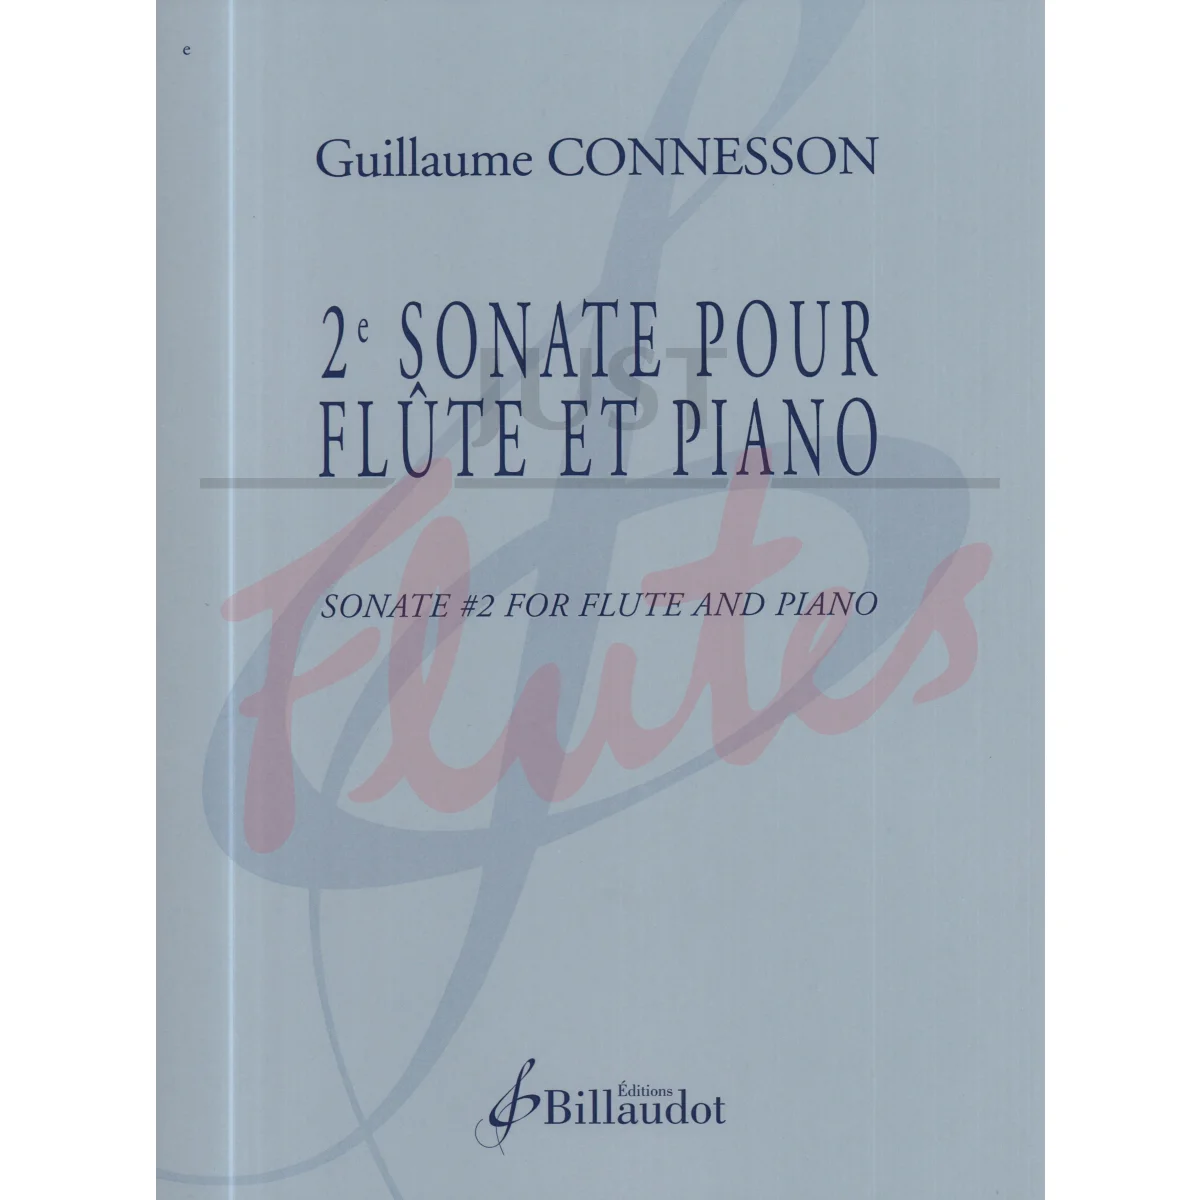 Sonata No. 2 for Flute and Piano